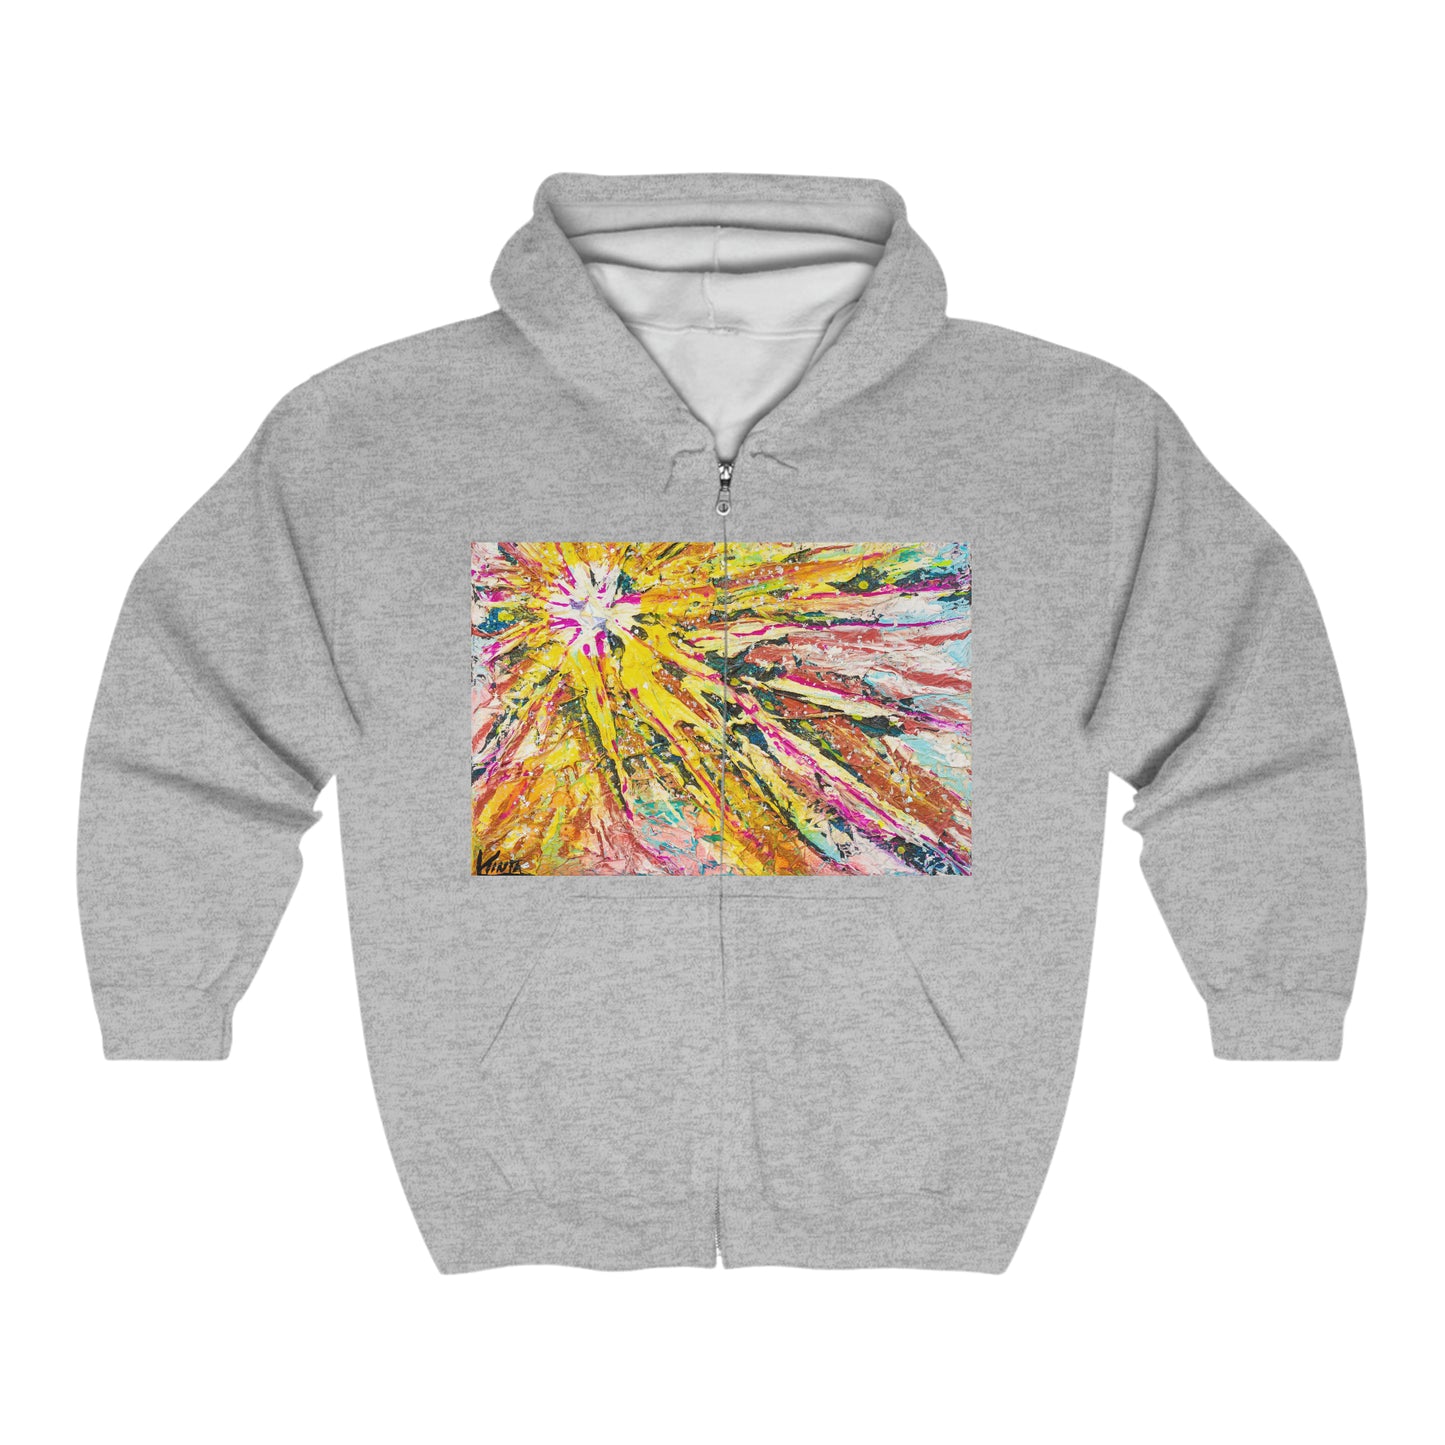 Unisex hooded sweatshirt, Stars